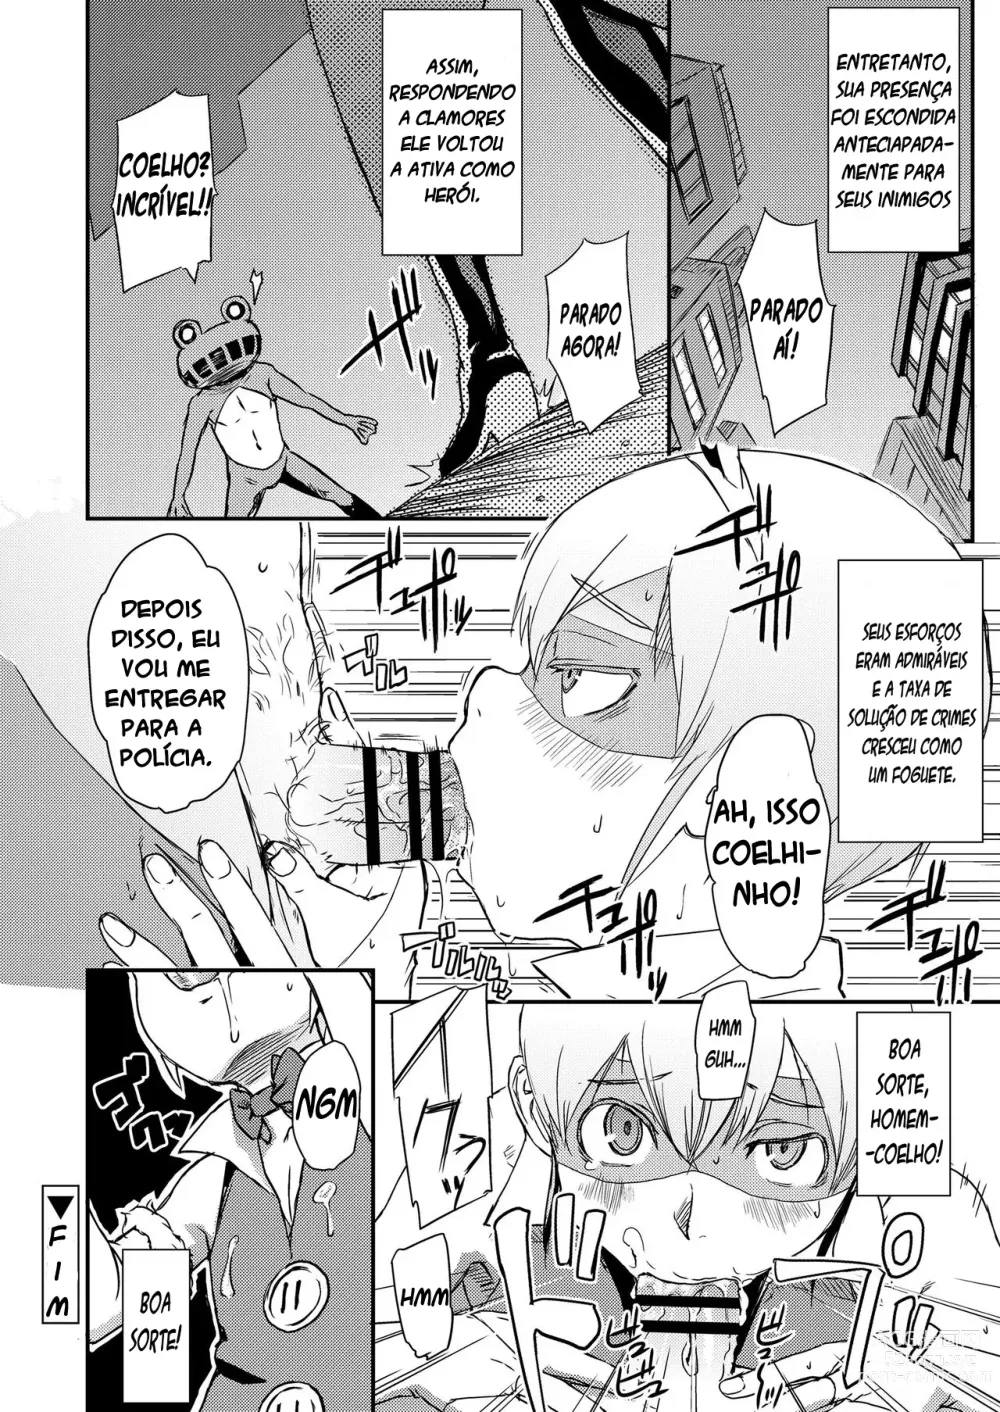 Page 18 of manga Vença! Homem-coelho